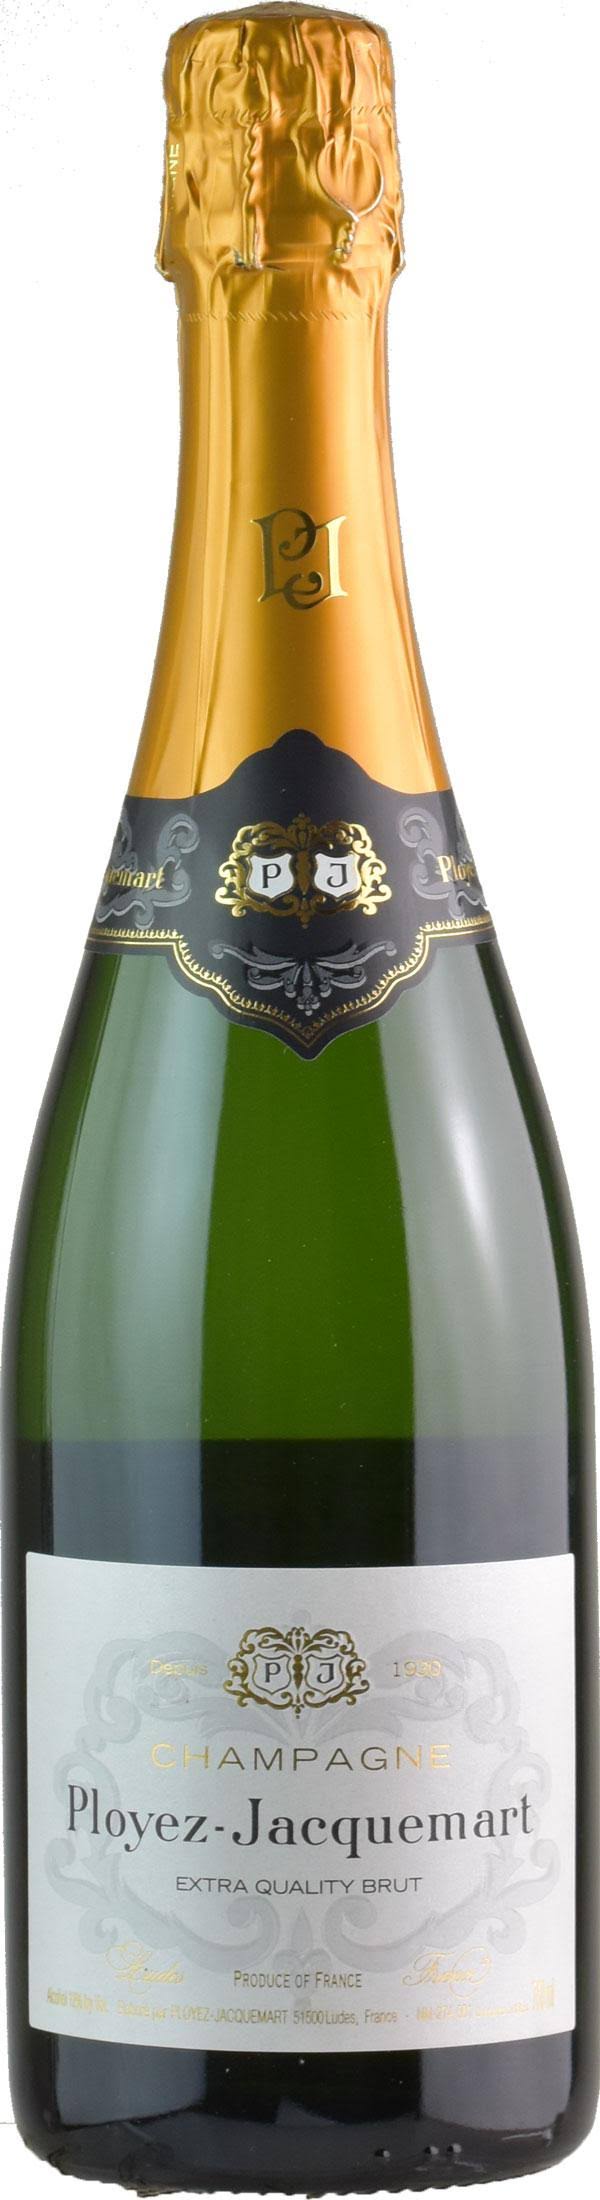 Ployez Jacquemart Champagne - Extra Quality Brut NV